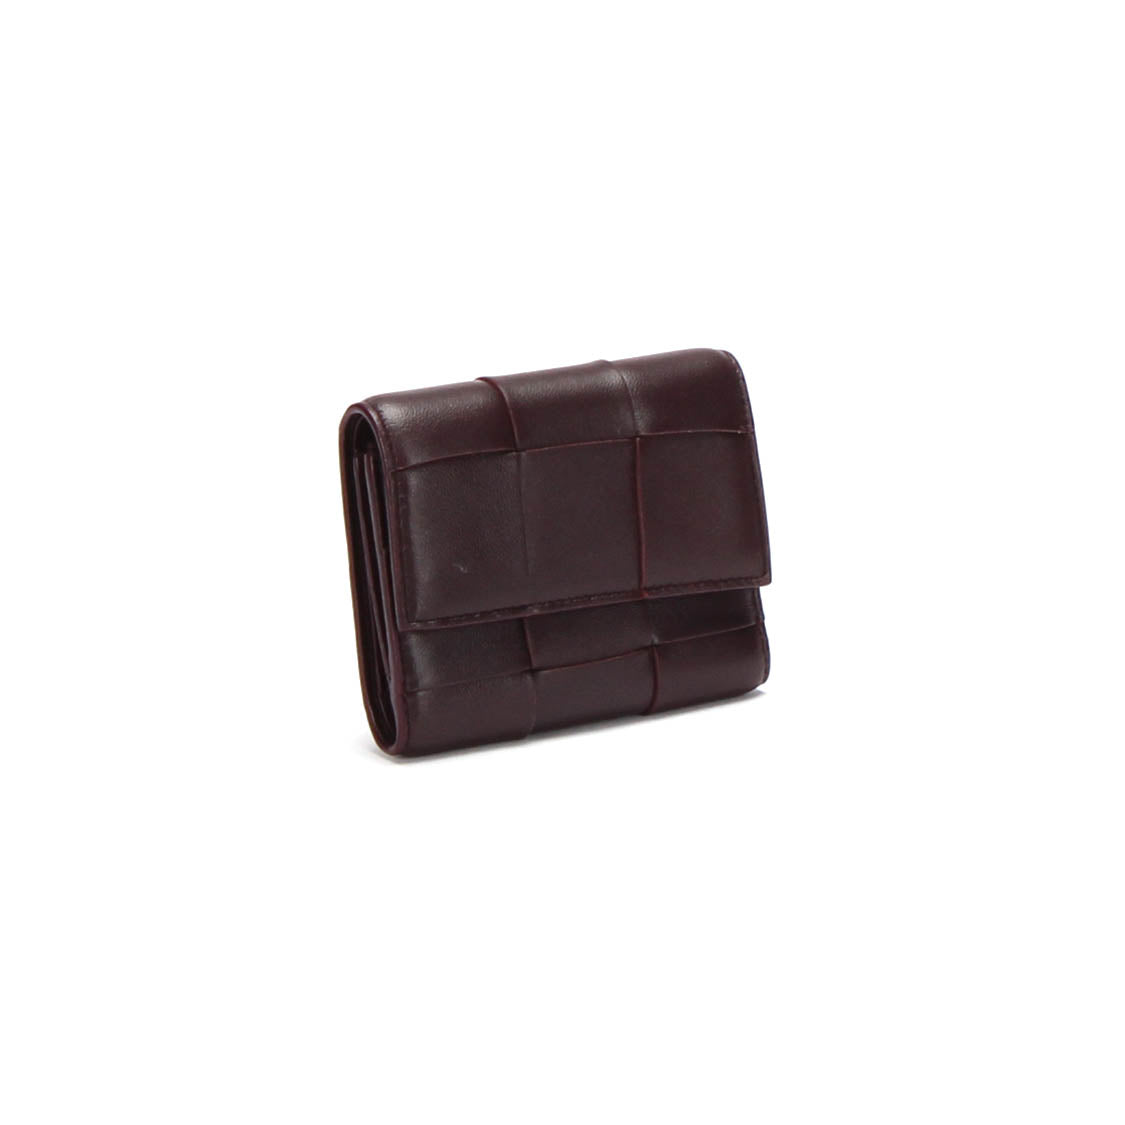 Intercciato Leather Small Wallet